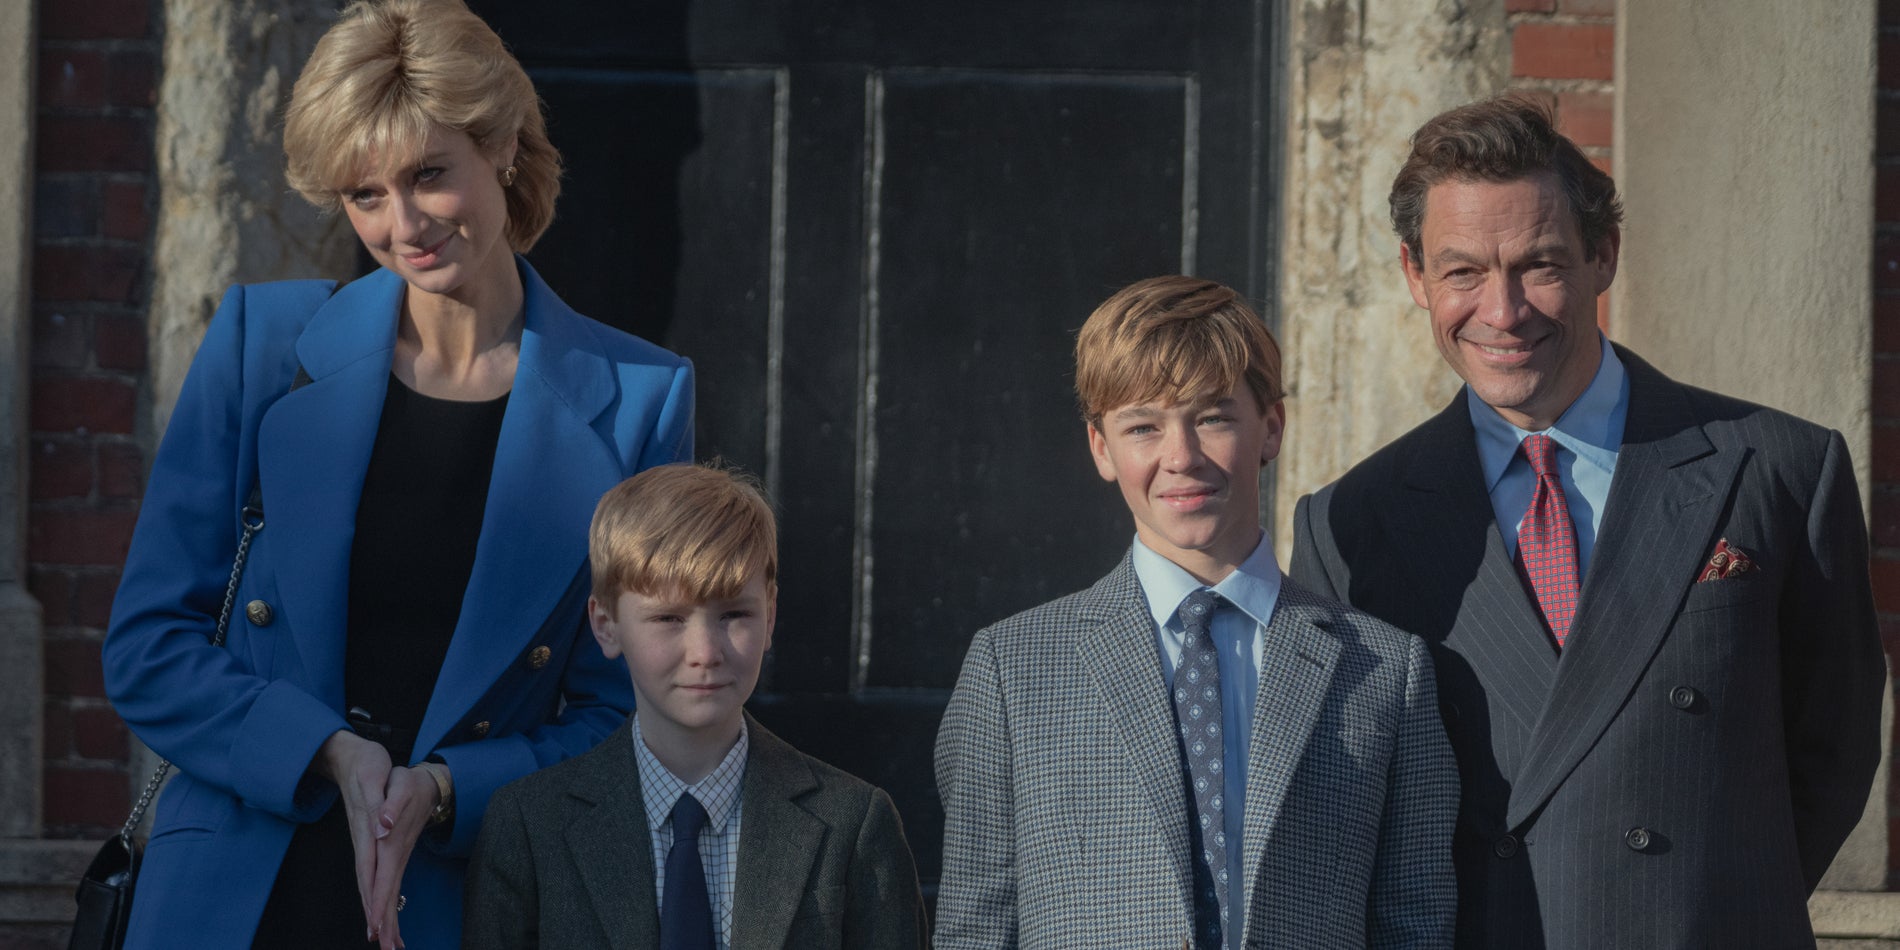 W nowym sezonie "The Crown" pojawili się najmłodsi przedstawiciele rodziny królewskiej, czyli William i Harry.